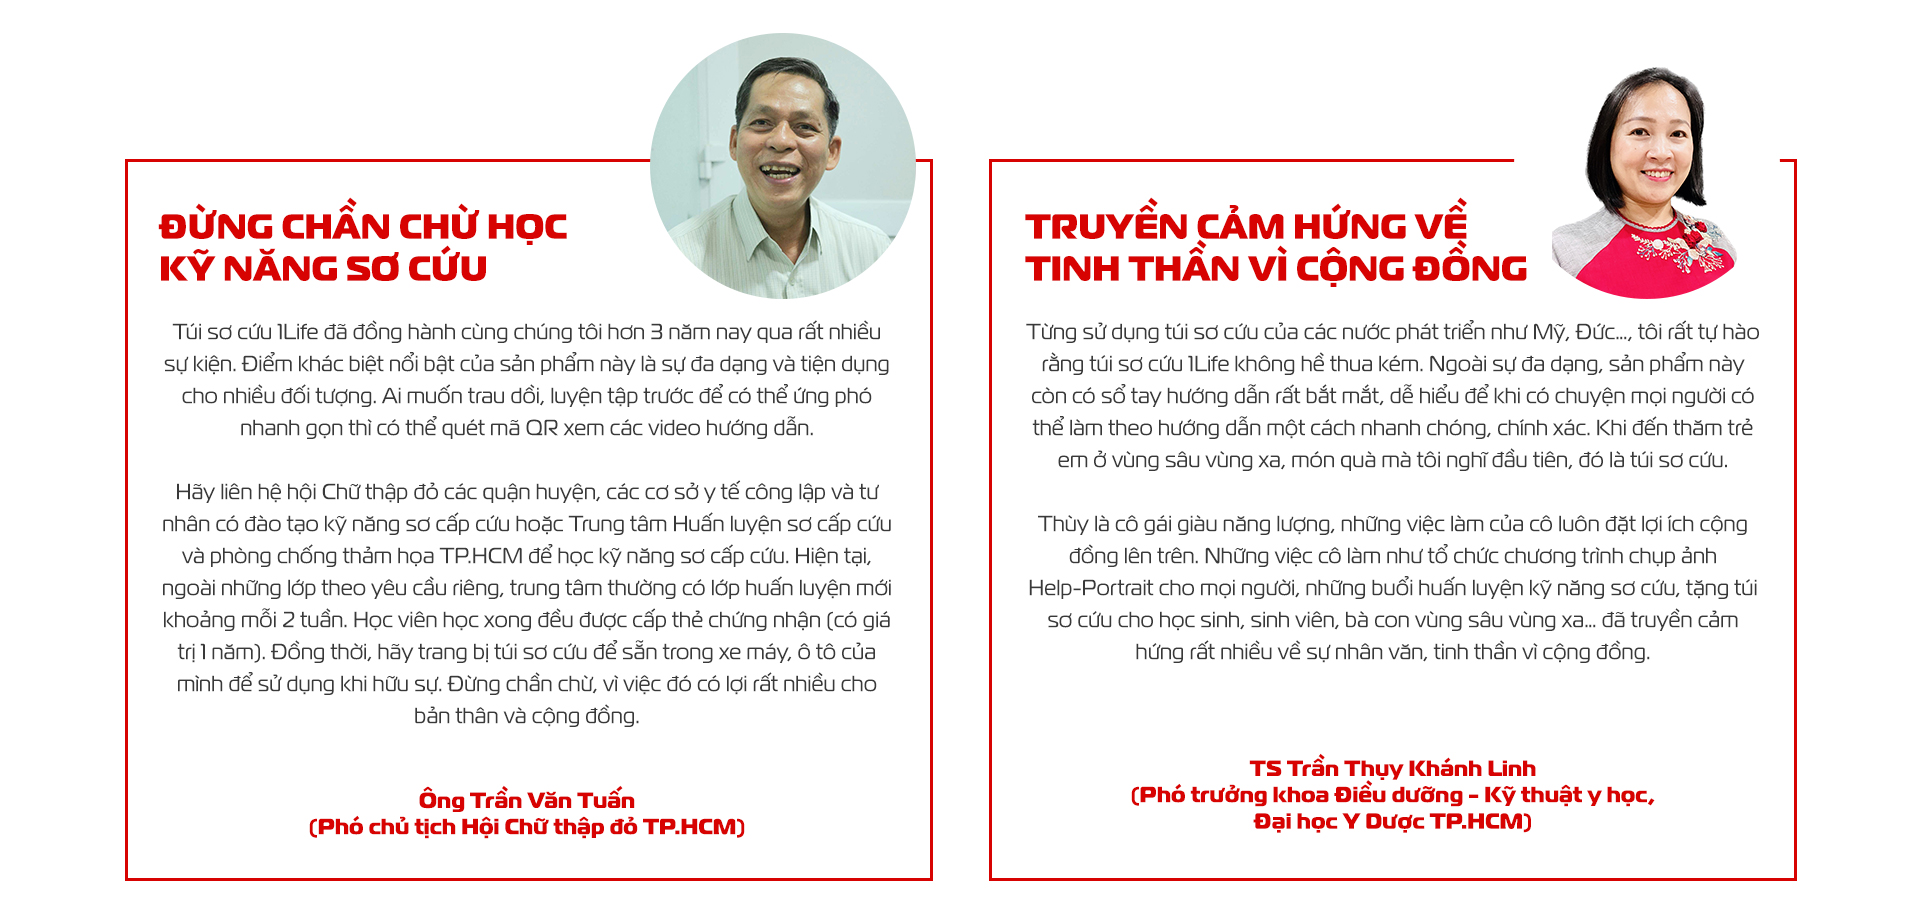 Nguyễn Thanh Thùy, sáng lập túi sơ cứu 1Life
Cùng làm điều có ích
- Ảnh 13.